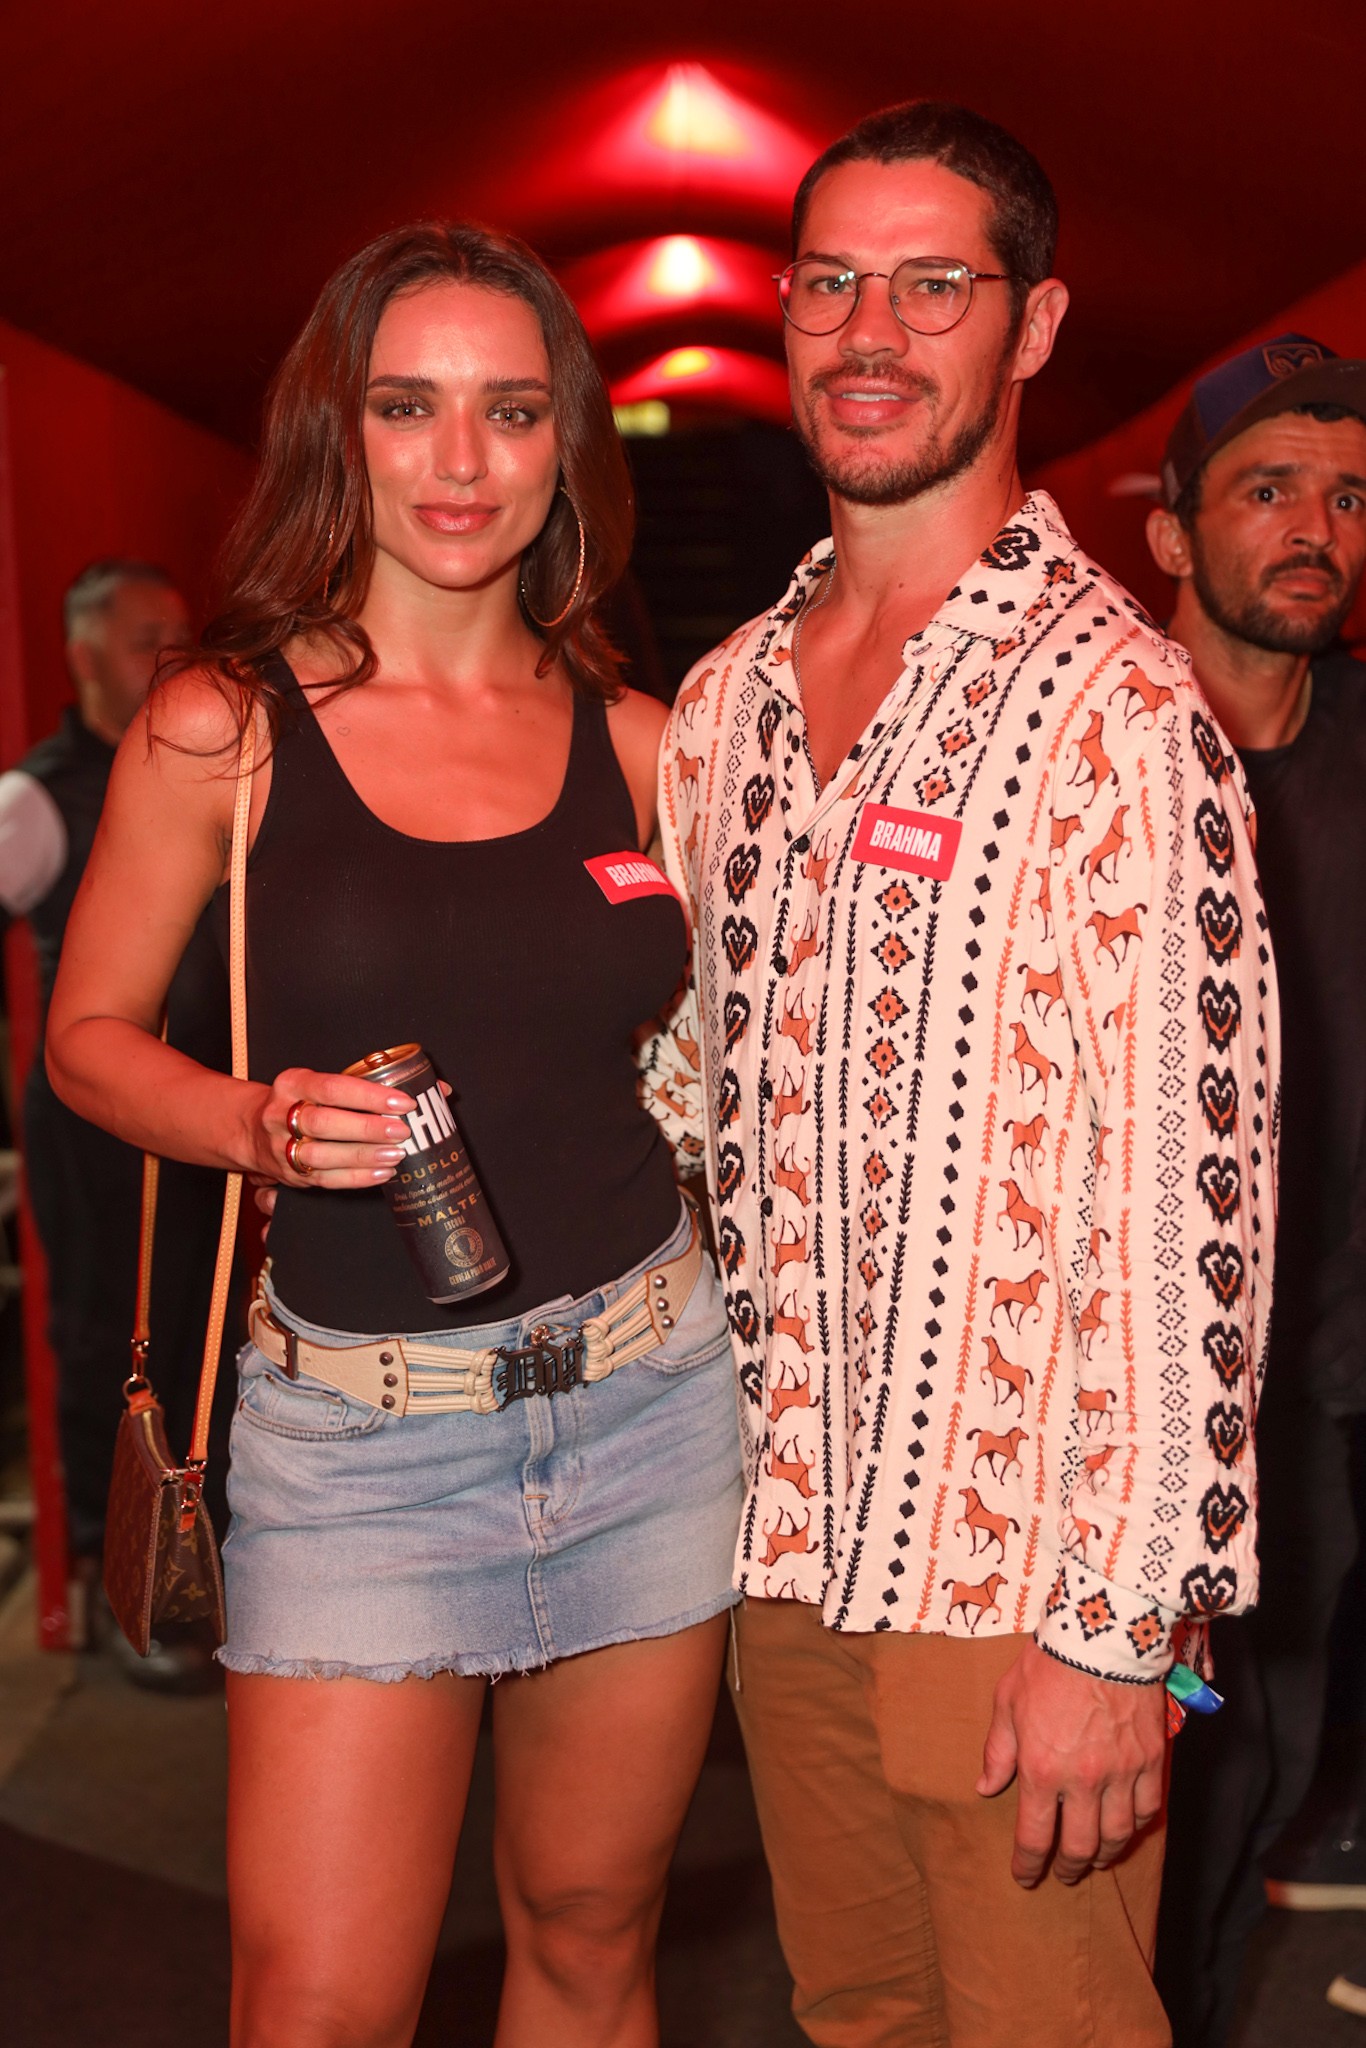 Rafa Kalimann e José Loreto ficaram juntos por 7 meses até o anúncio do fim do relacionamento— Foto: Lucas Ramos/BrazilNews